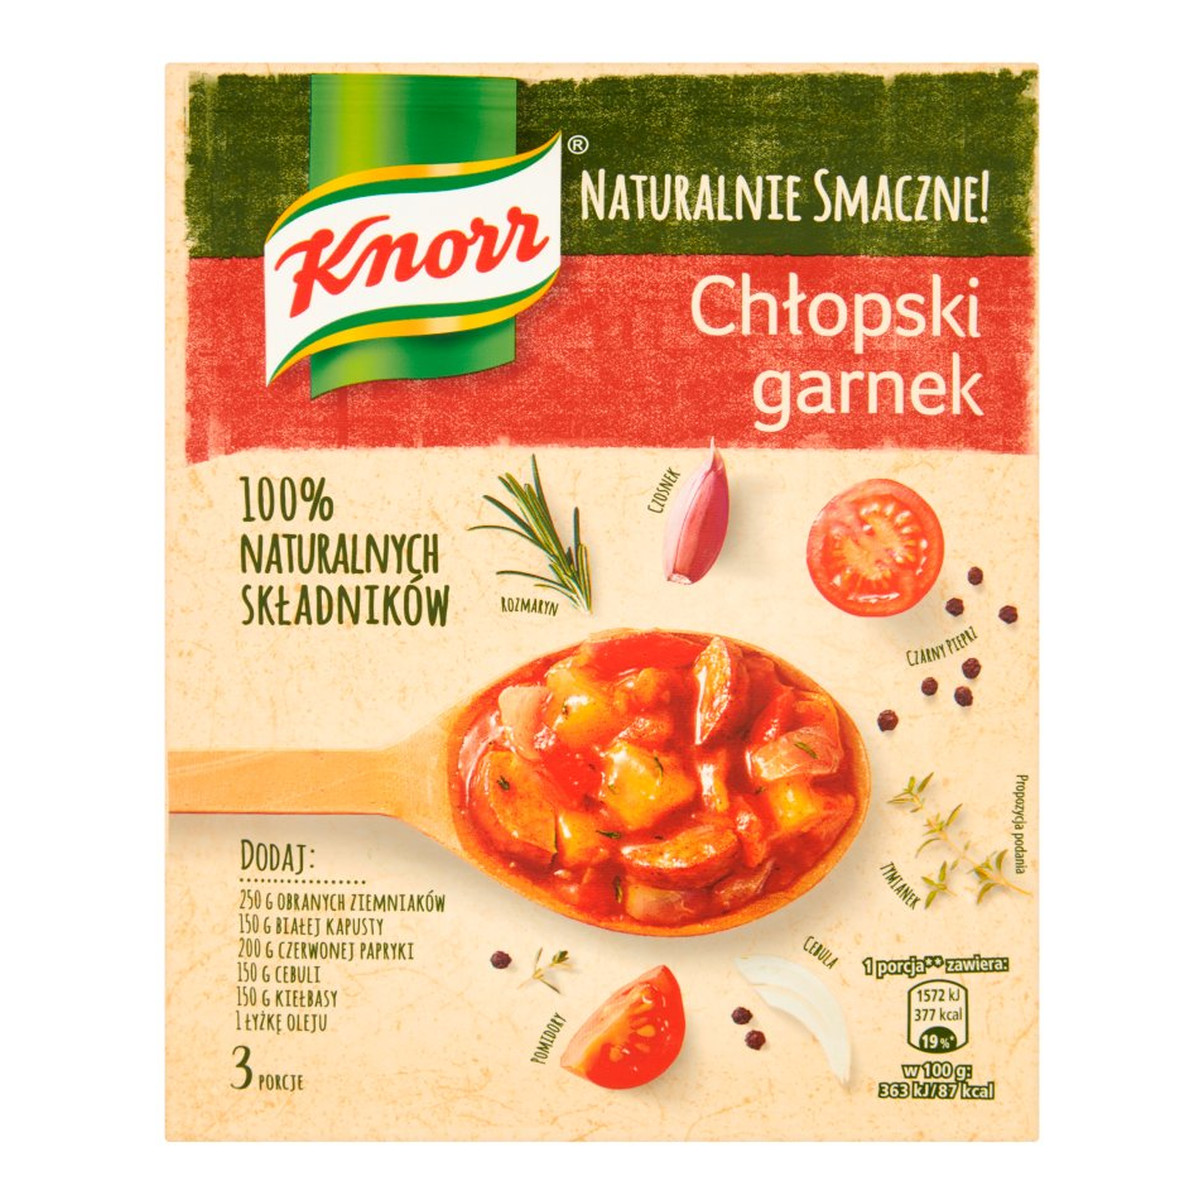 Knorr Naturalnie Smaczne! chłopski garnek 63g